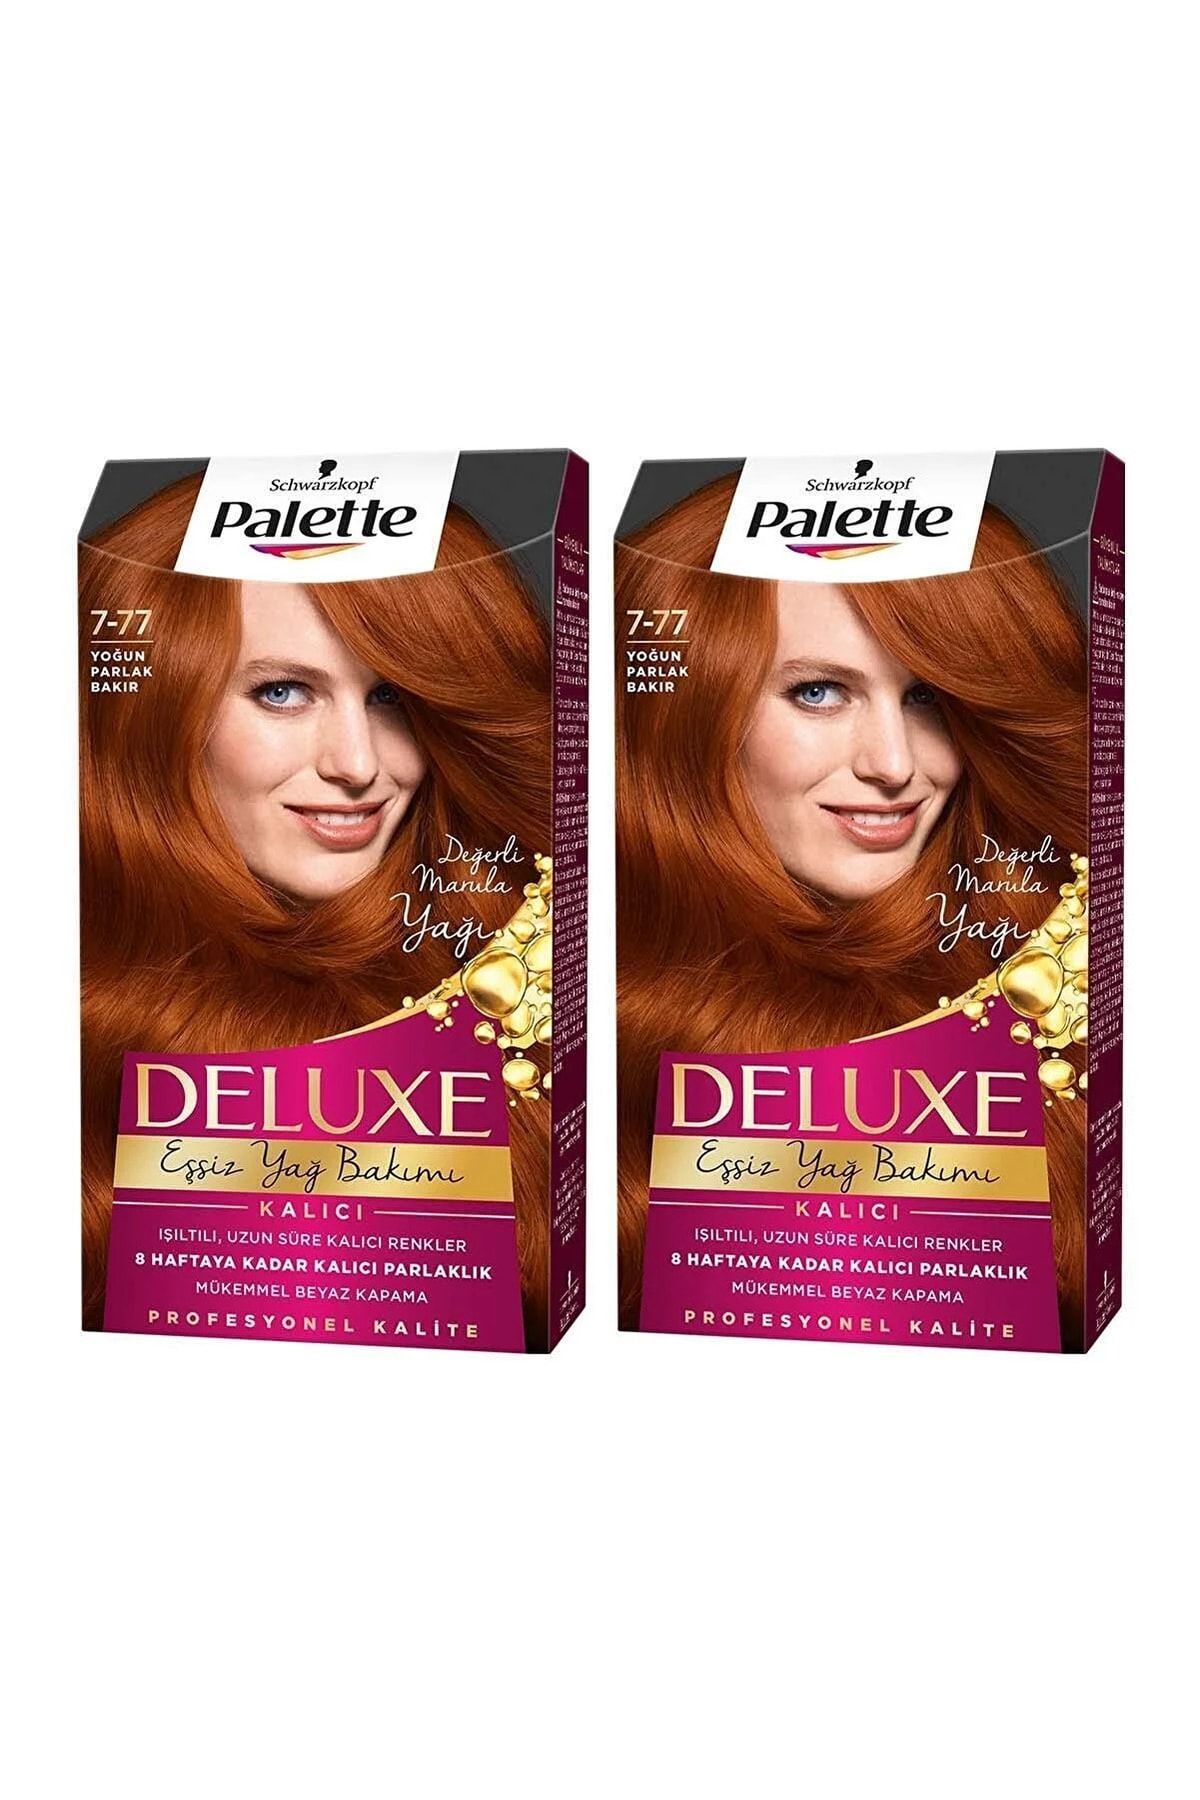 Palette Deluxe Saç Boyası 7-77 Yoğun Parlak Bakır X 2 Adet